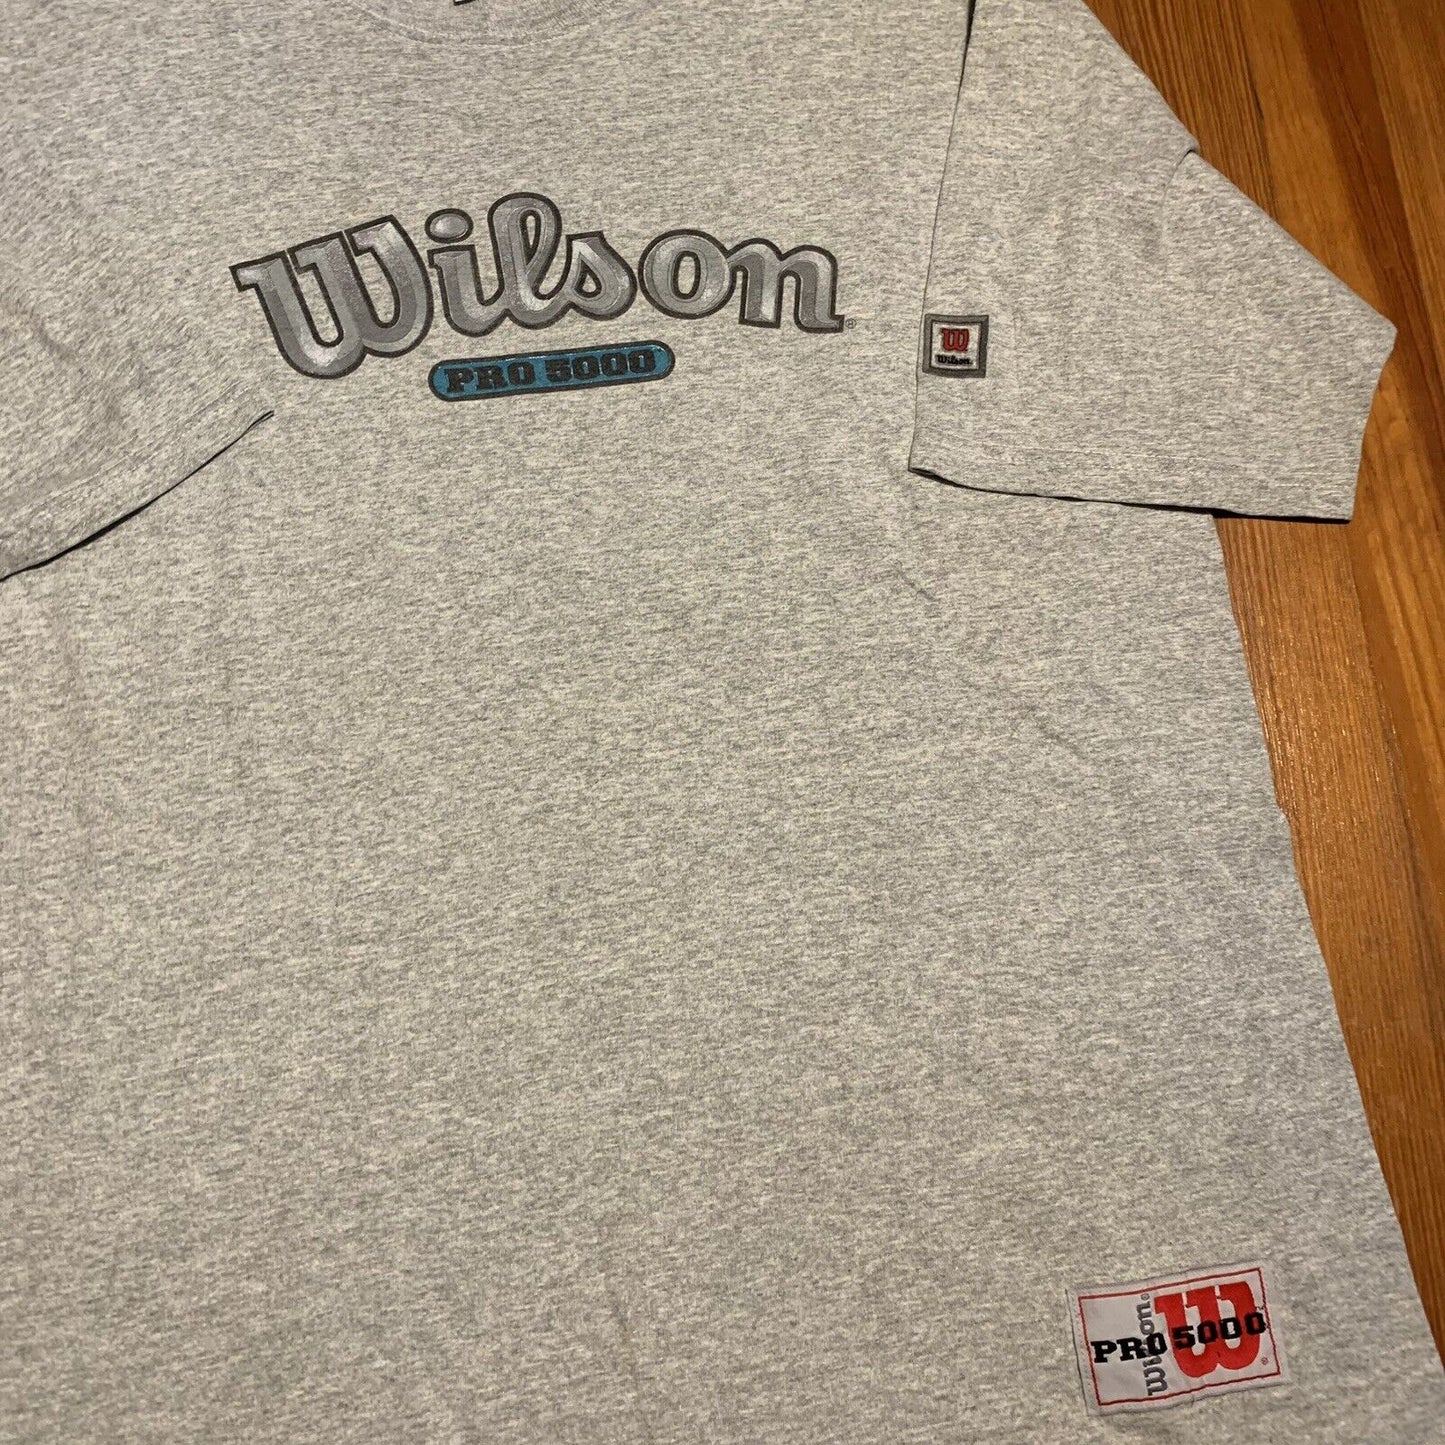 Vintage Wilson Athletics T Shirt Size Xl